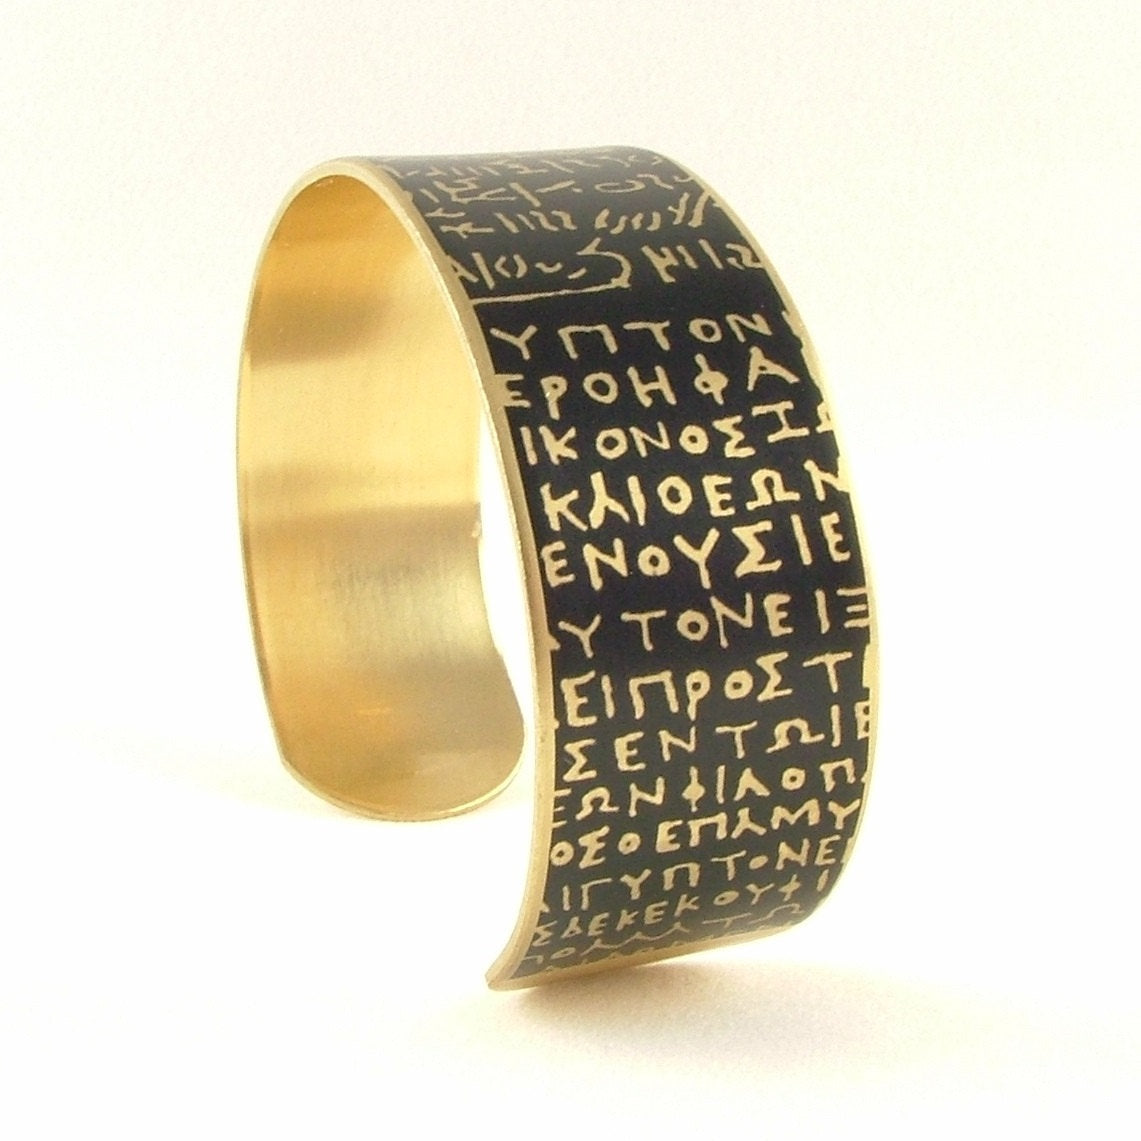 Rosetta Stone Cuff Bracelet